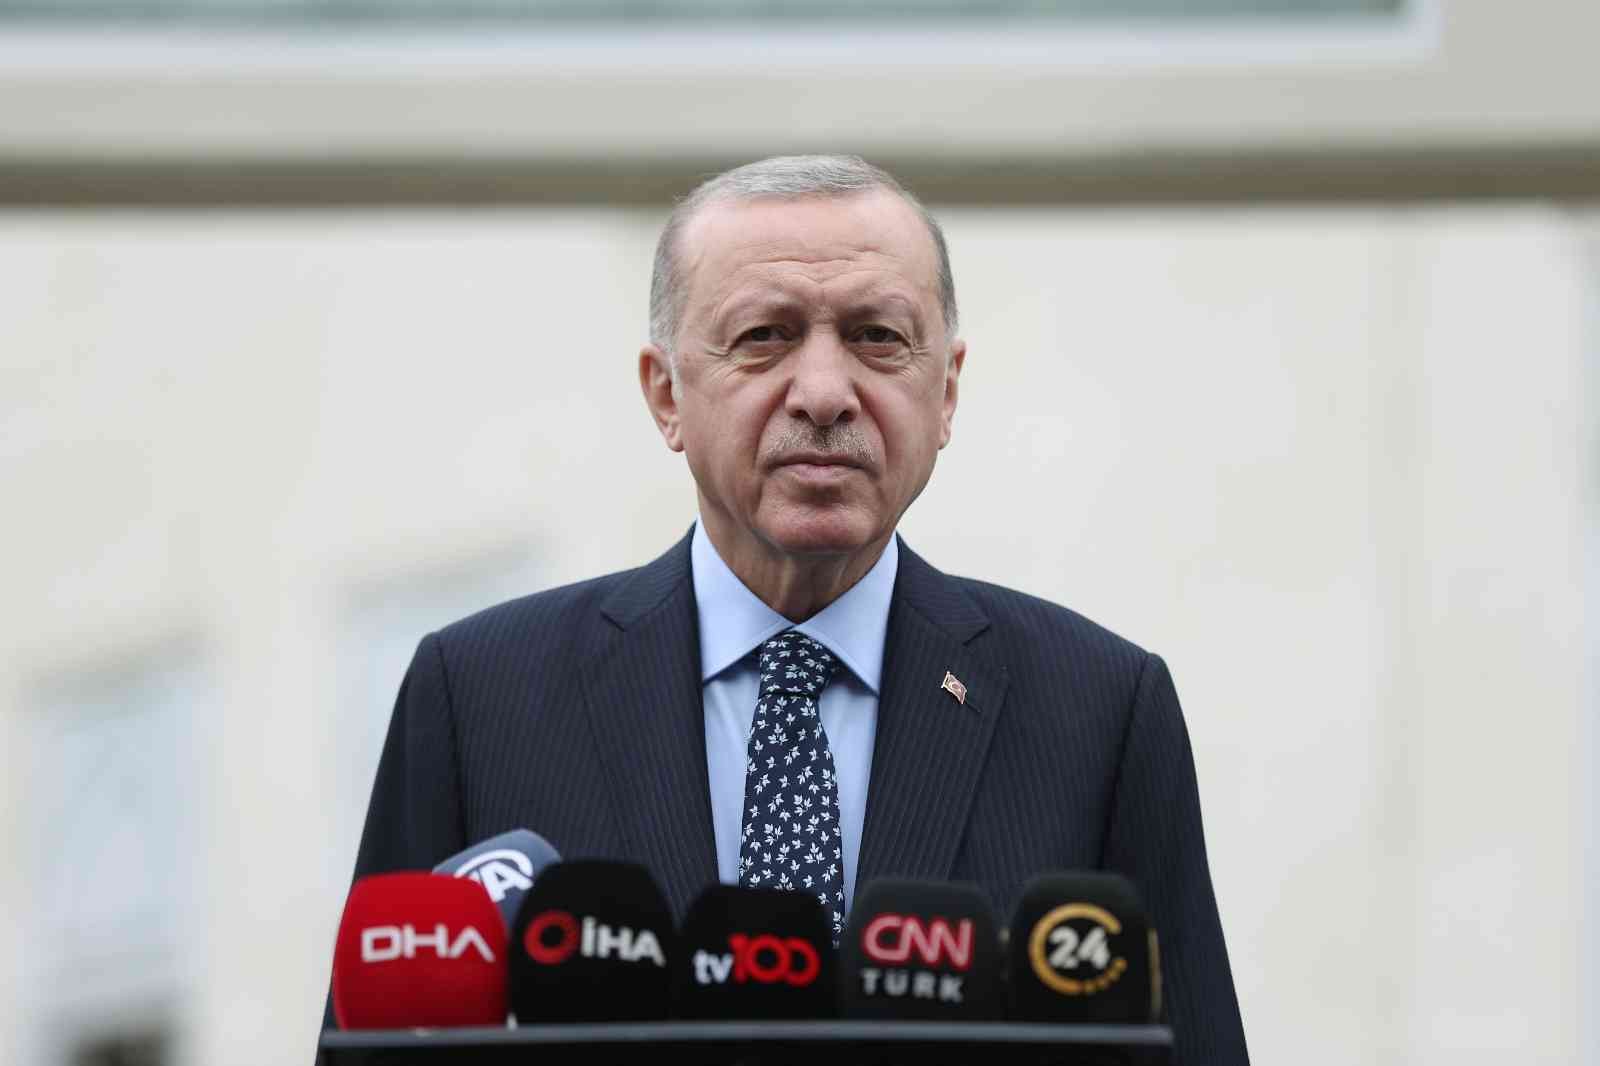 Cumhurbaşkanı Erdoğan: “Mücadelemiz bundan sonraki süreçte çok daha farklı şekilde devam edecektir”